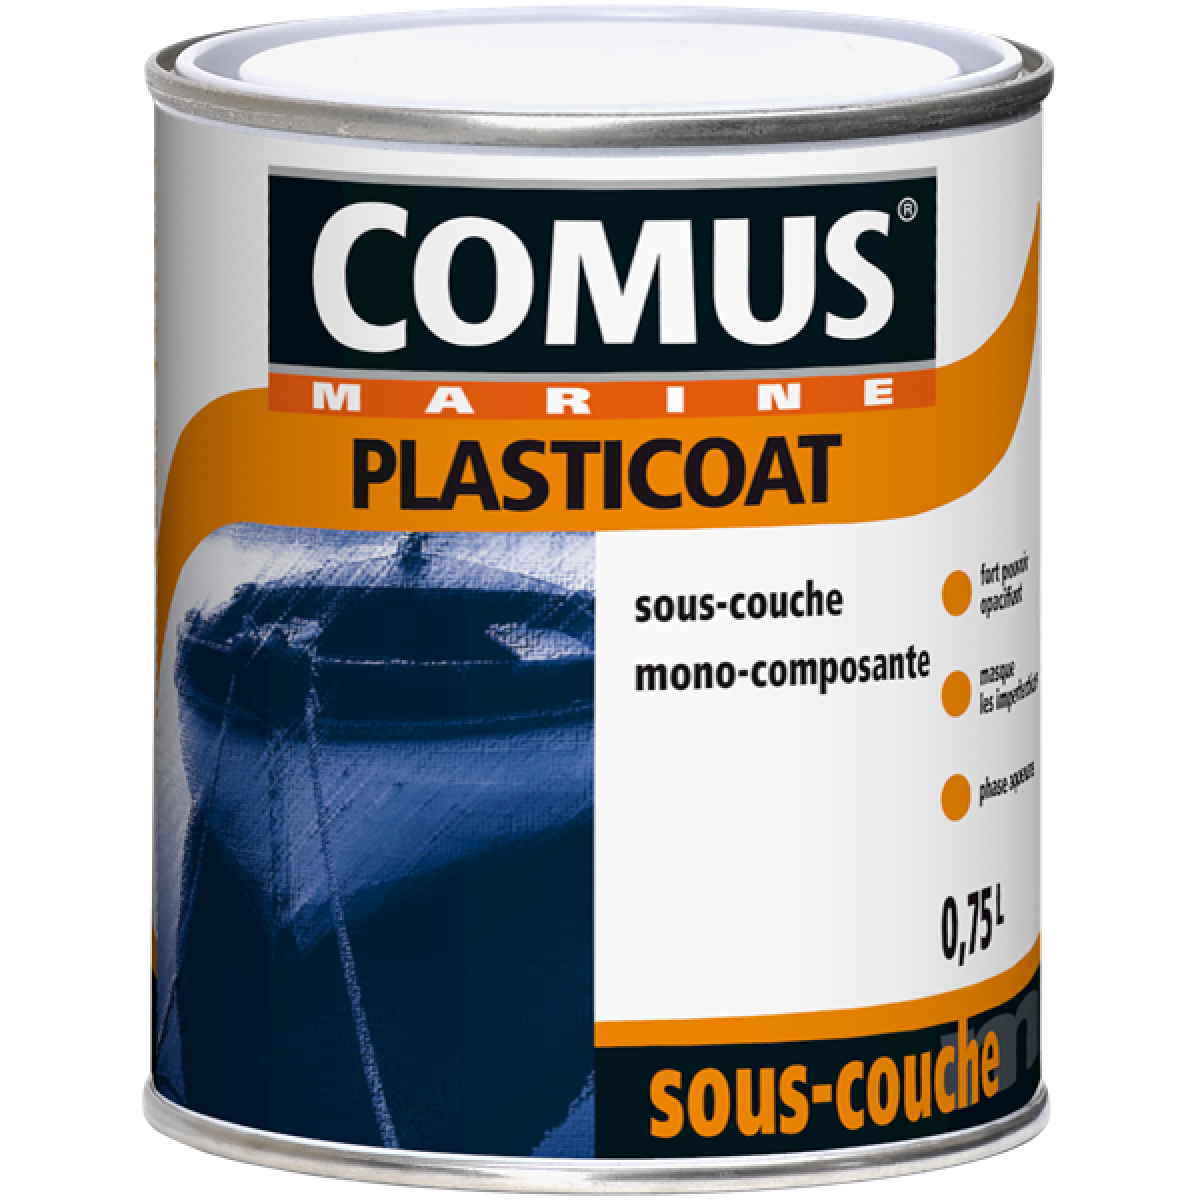 Comus - PLASTICOAT Blanc 0,75L - Sous-couche universelle mono-composante en phase aqueuse - COMUS MARINE - Peinture extérieure